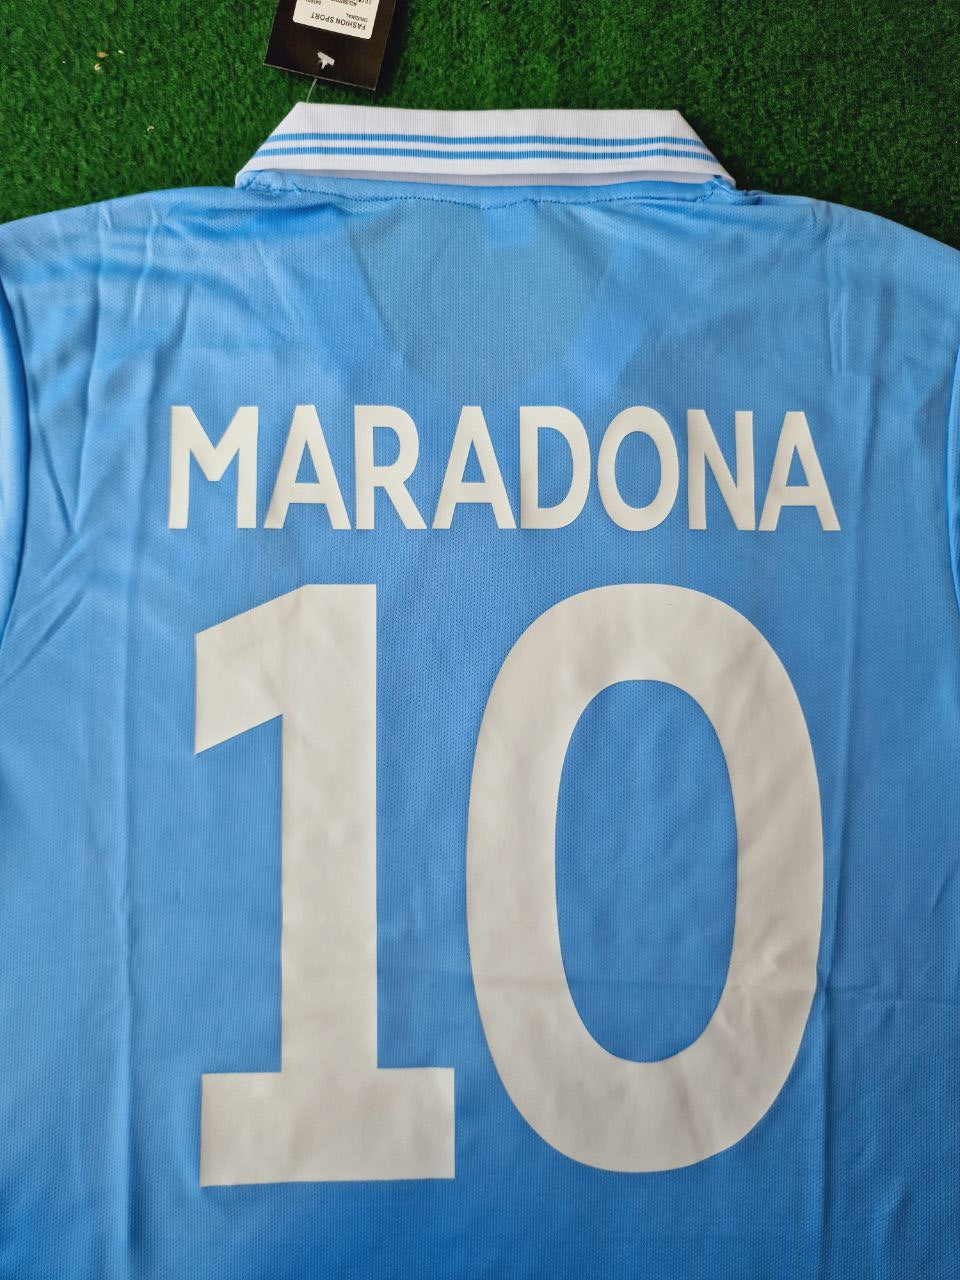 Maradona Napoli Retro Football Jersey